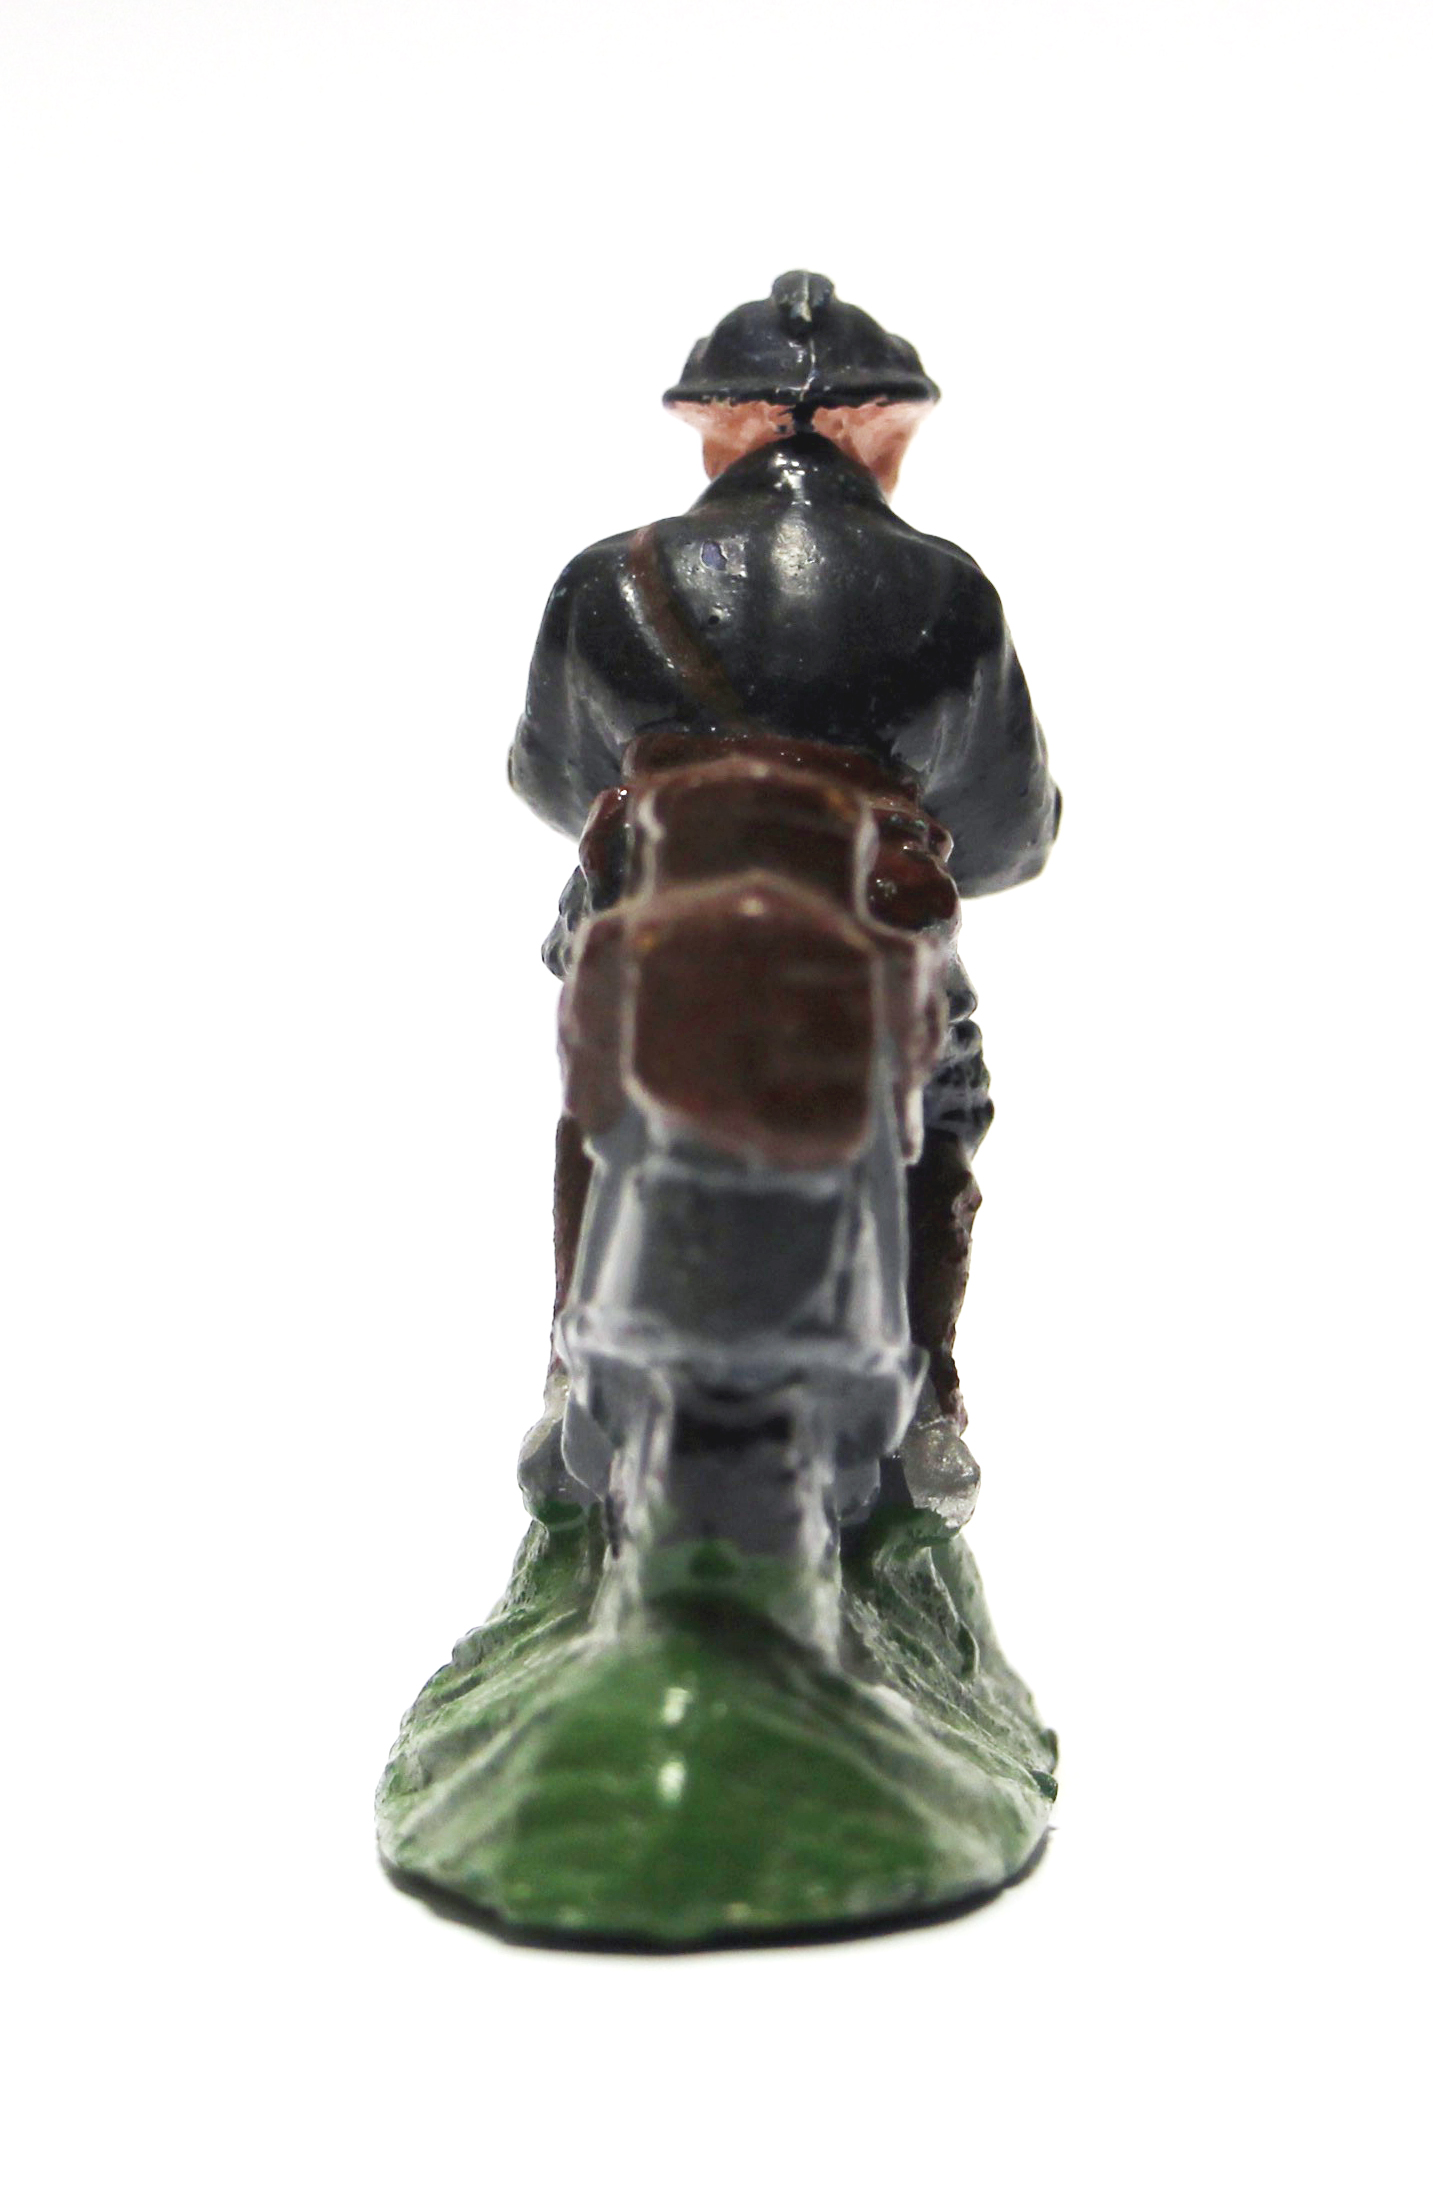 Ancienne Figurine Composite Armée Soldat - Plâtre - Motard - Moto - Soldat - Armée Française - 1940